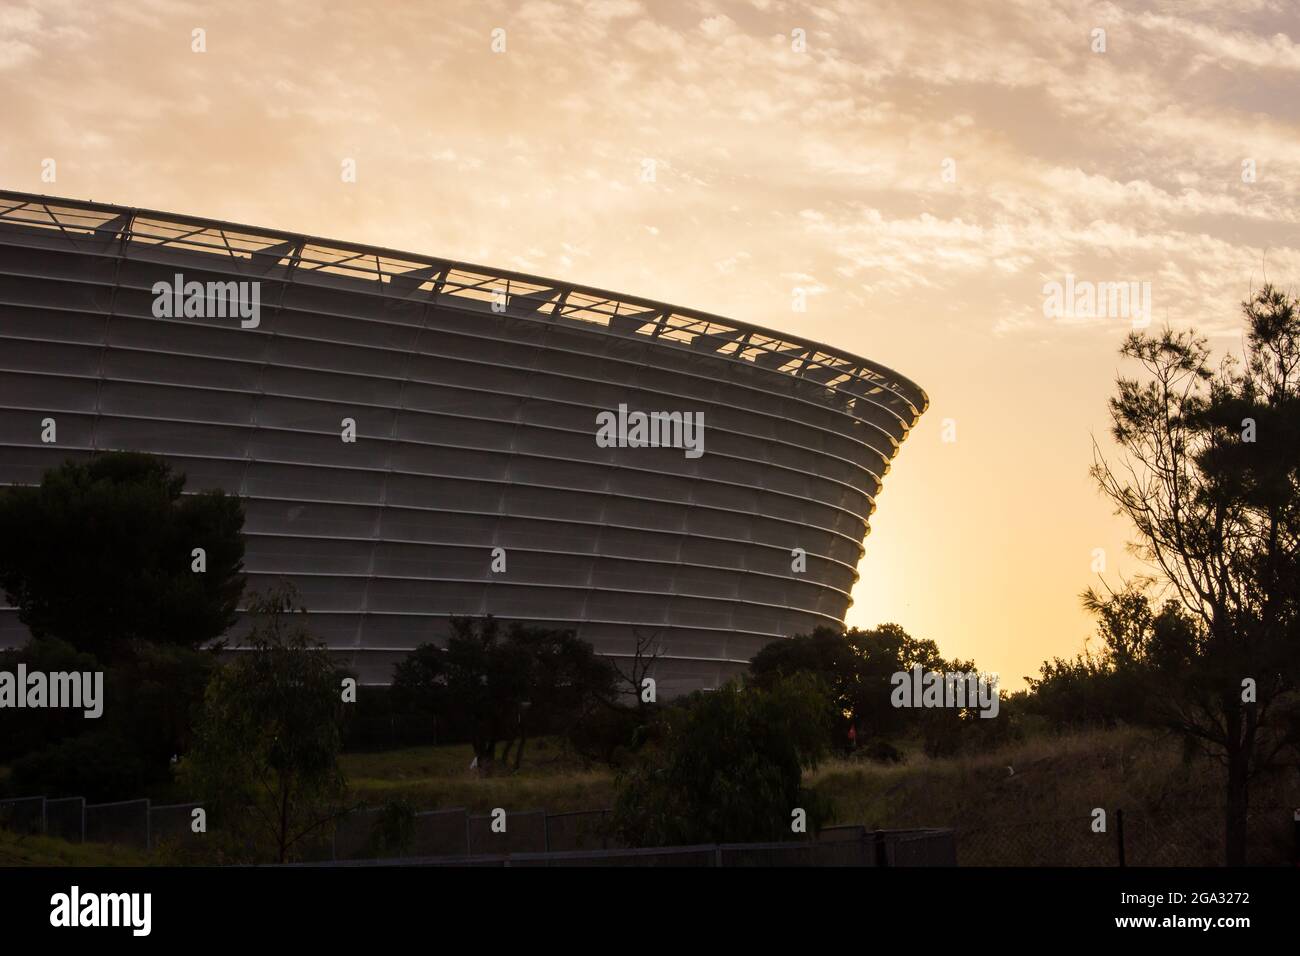 Stade de Green point, le Cap, Afrique du Sud, au crépuscule. C'était l'un des stades construits pour la coupe du monde de football 2010 Banque D'Images